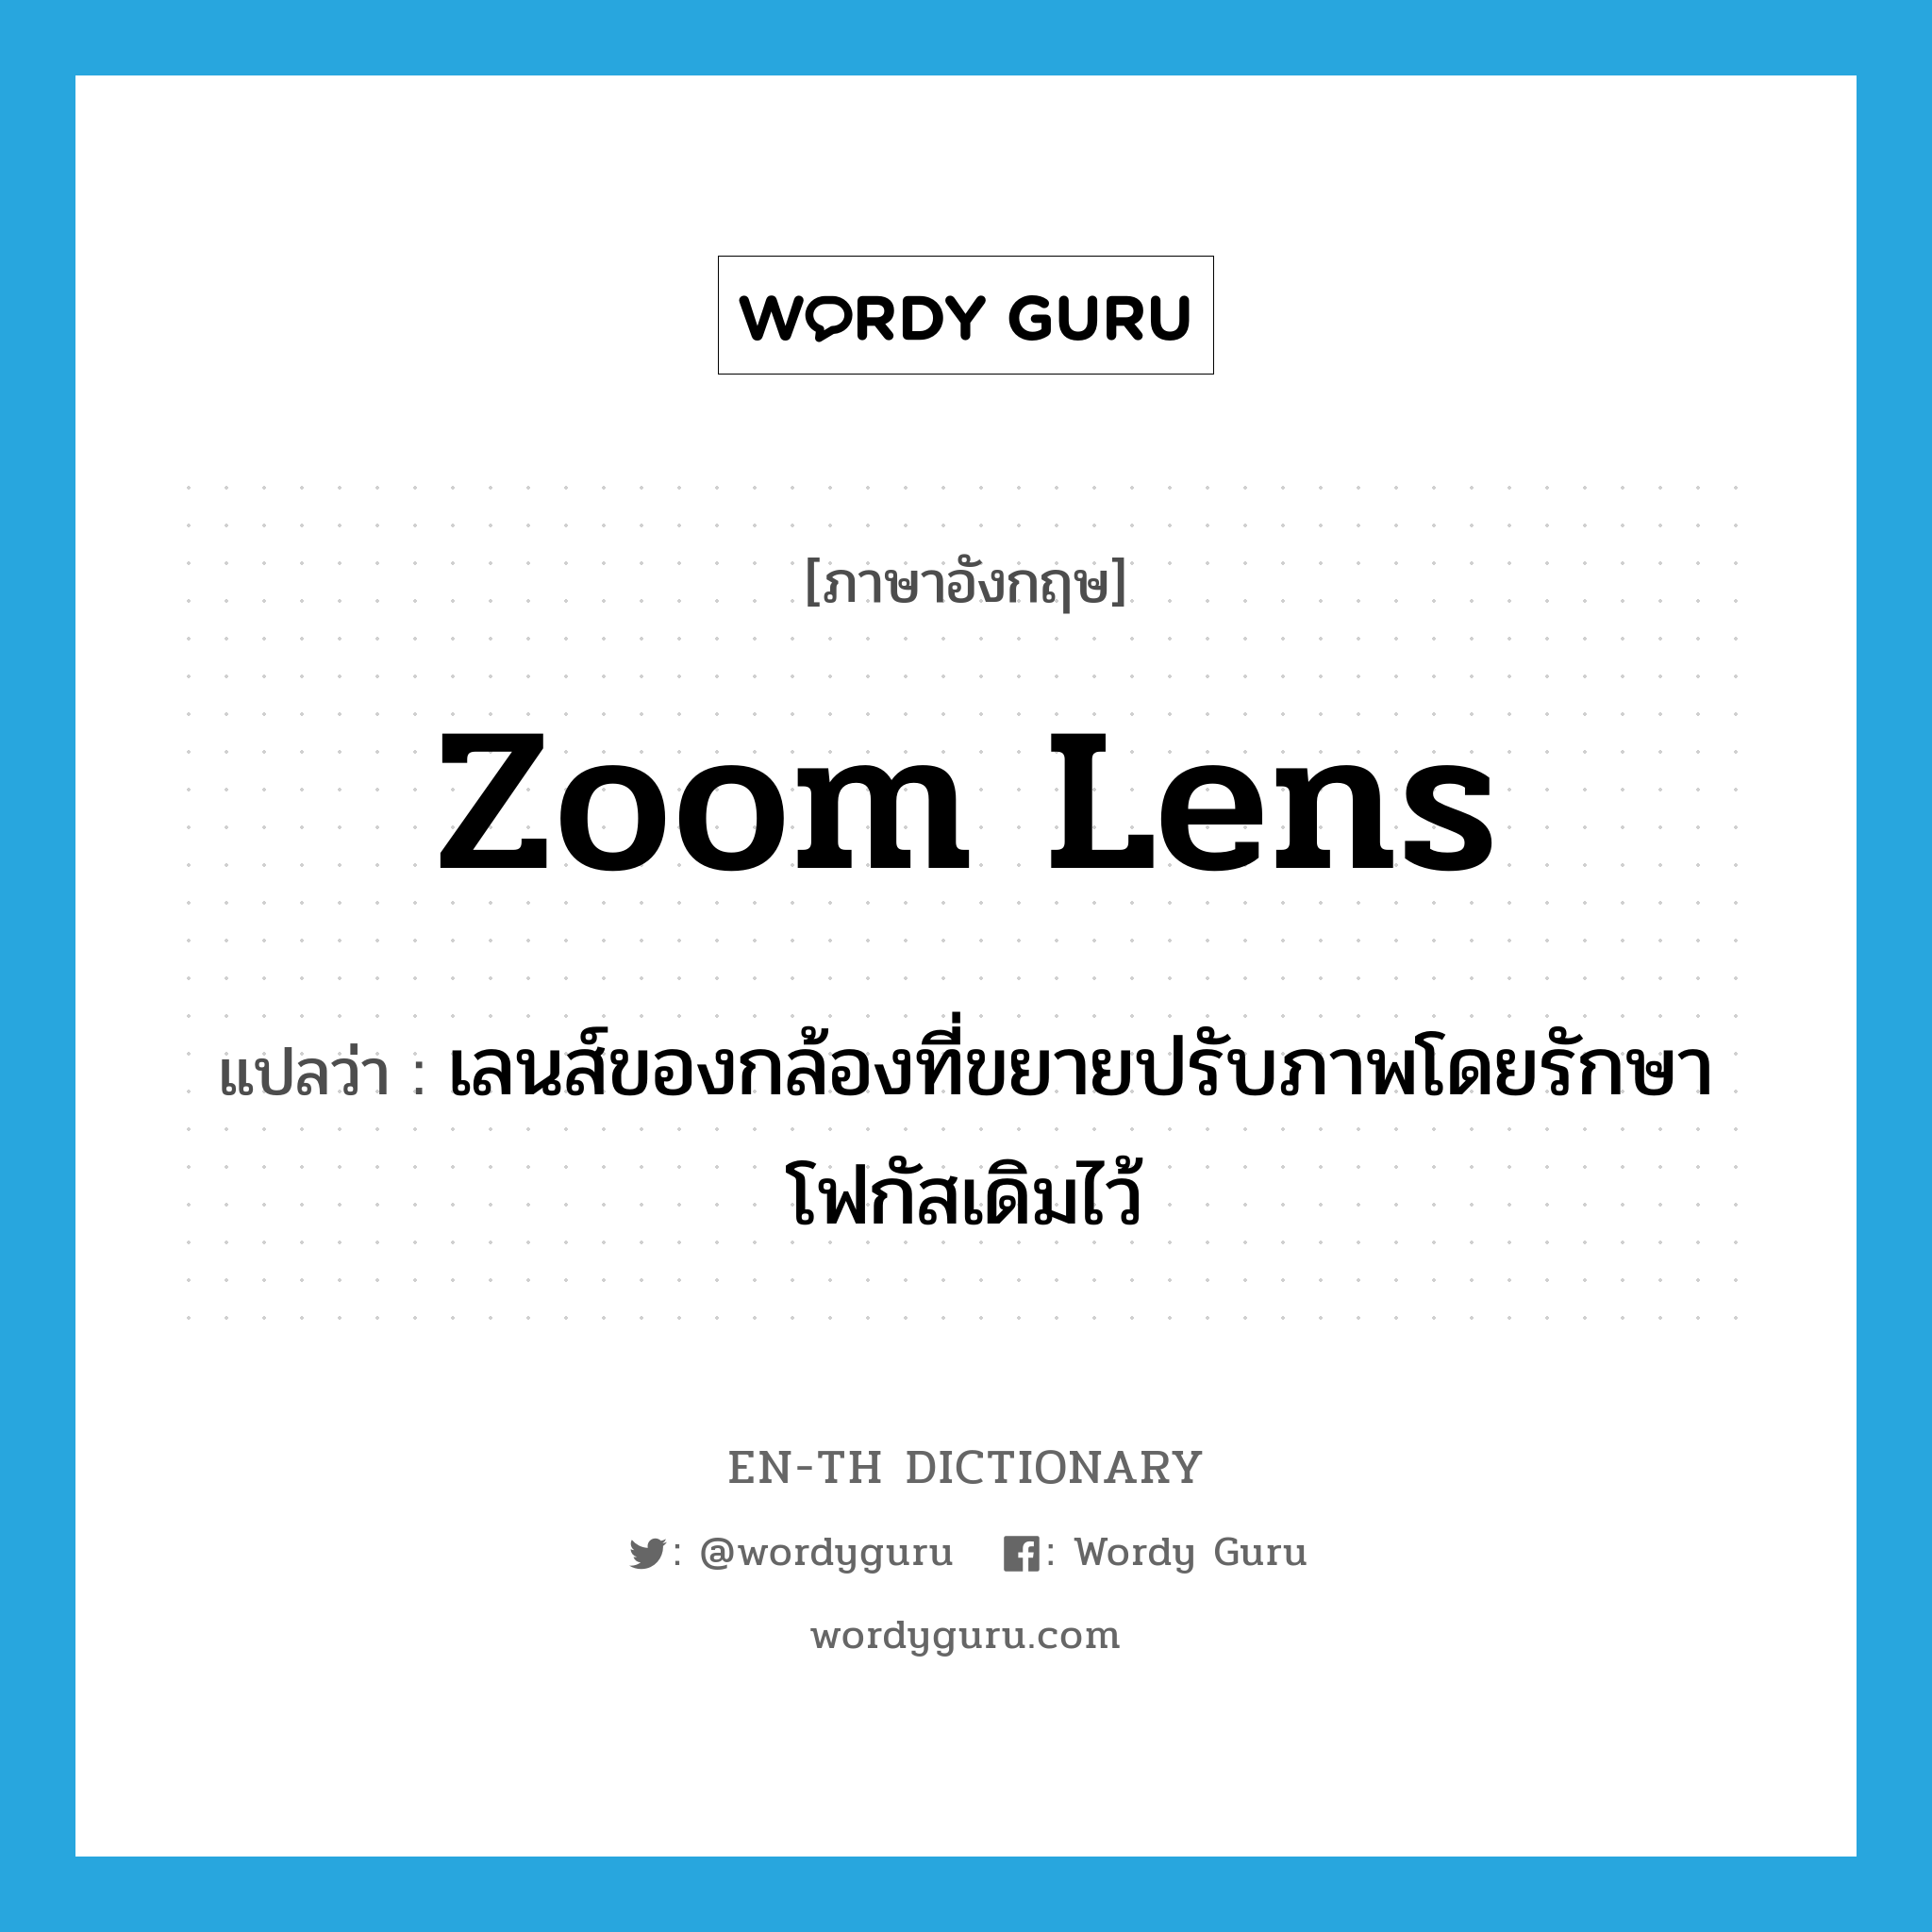 zoom lens แปลว่า?, คำศัพท์ภาษาอังกฤษ zoom lens แปลว่า เลนส์ของกล้องที่ขยายปรับภาพโดยรักษาโฟกัสเดิมไว้ ประเภท N หมวด N